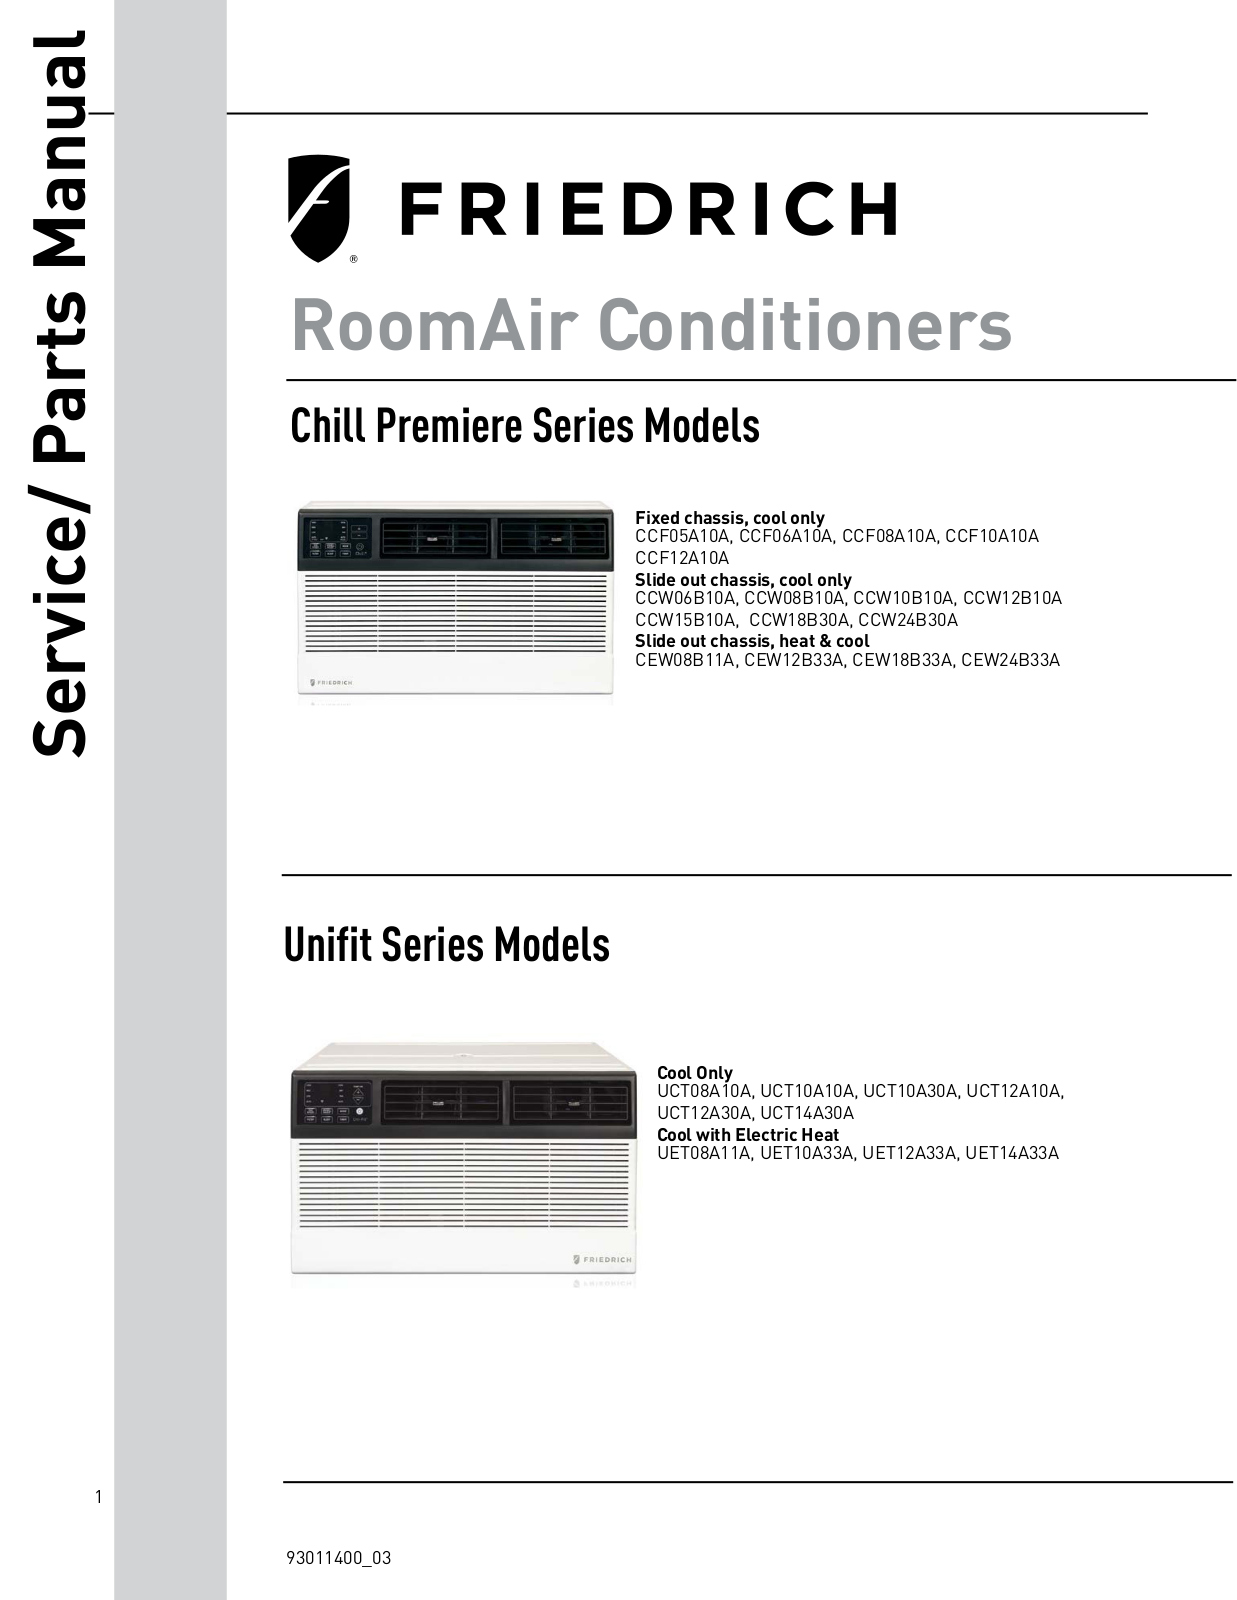 Friedrich CCF05A10A, CCF06A10A, CCF08A10A, CCF10A10A, CCF12A10A Service & Parts Manual